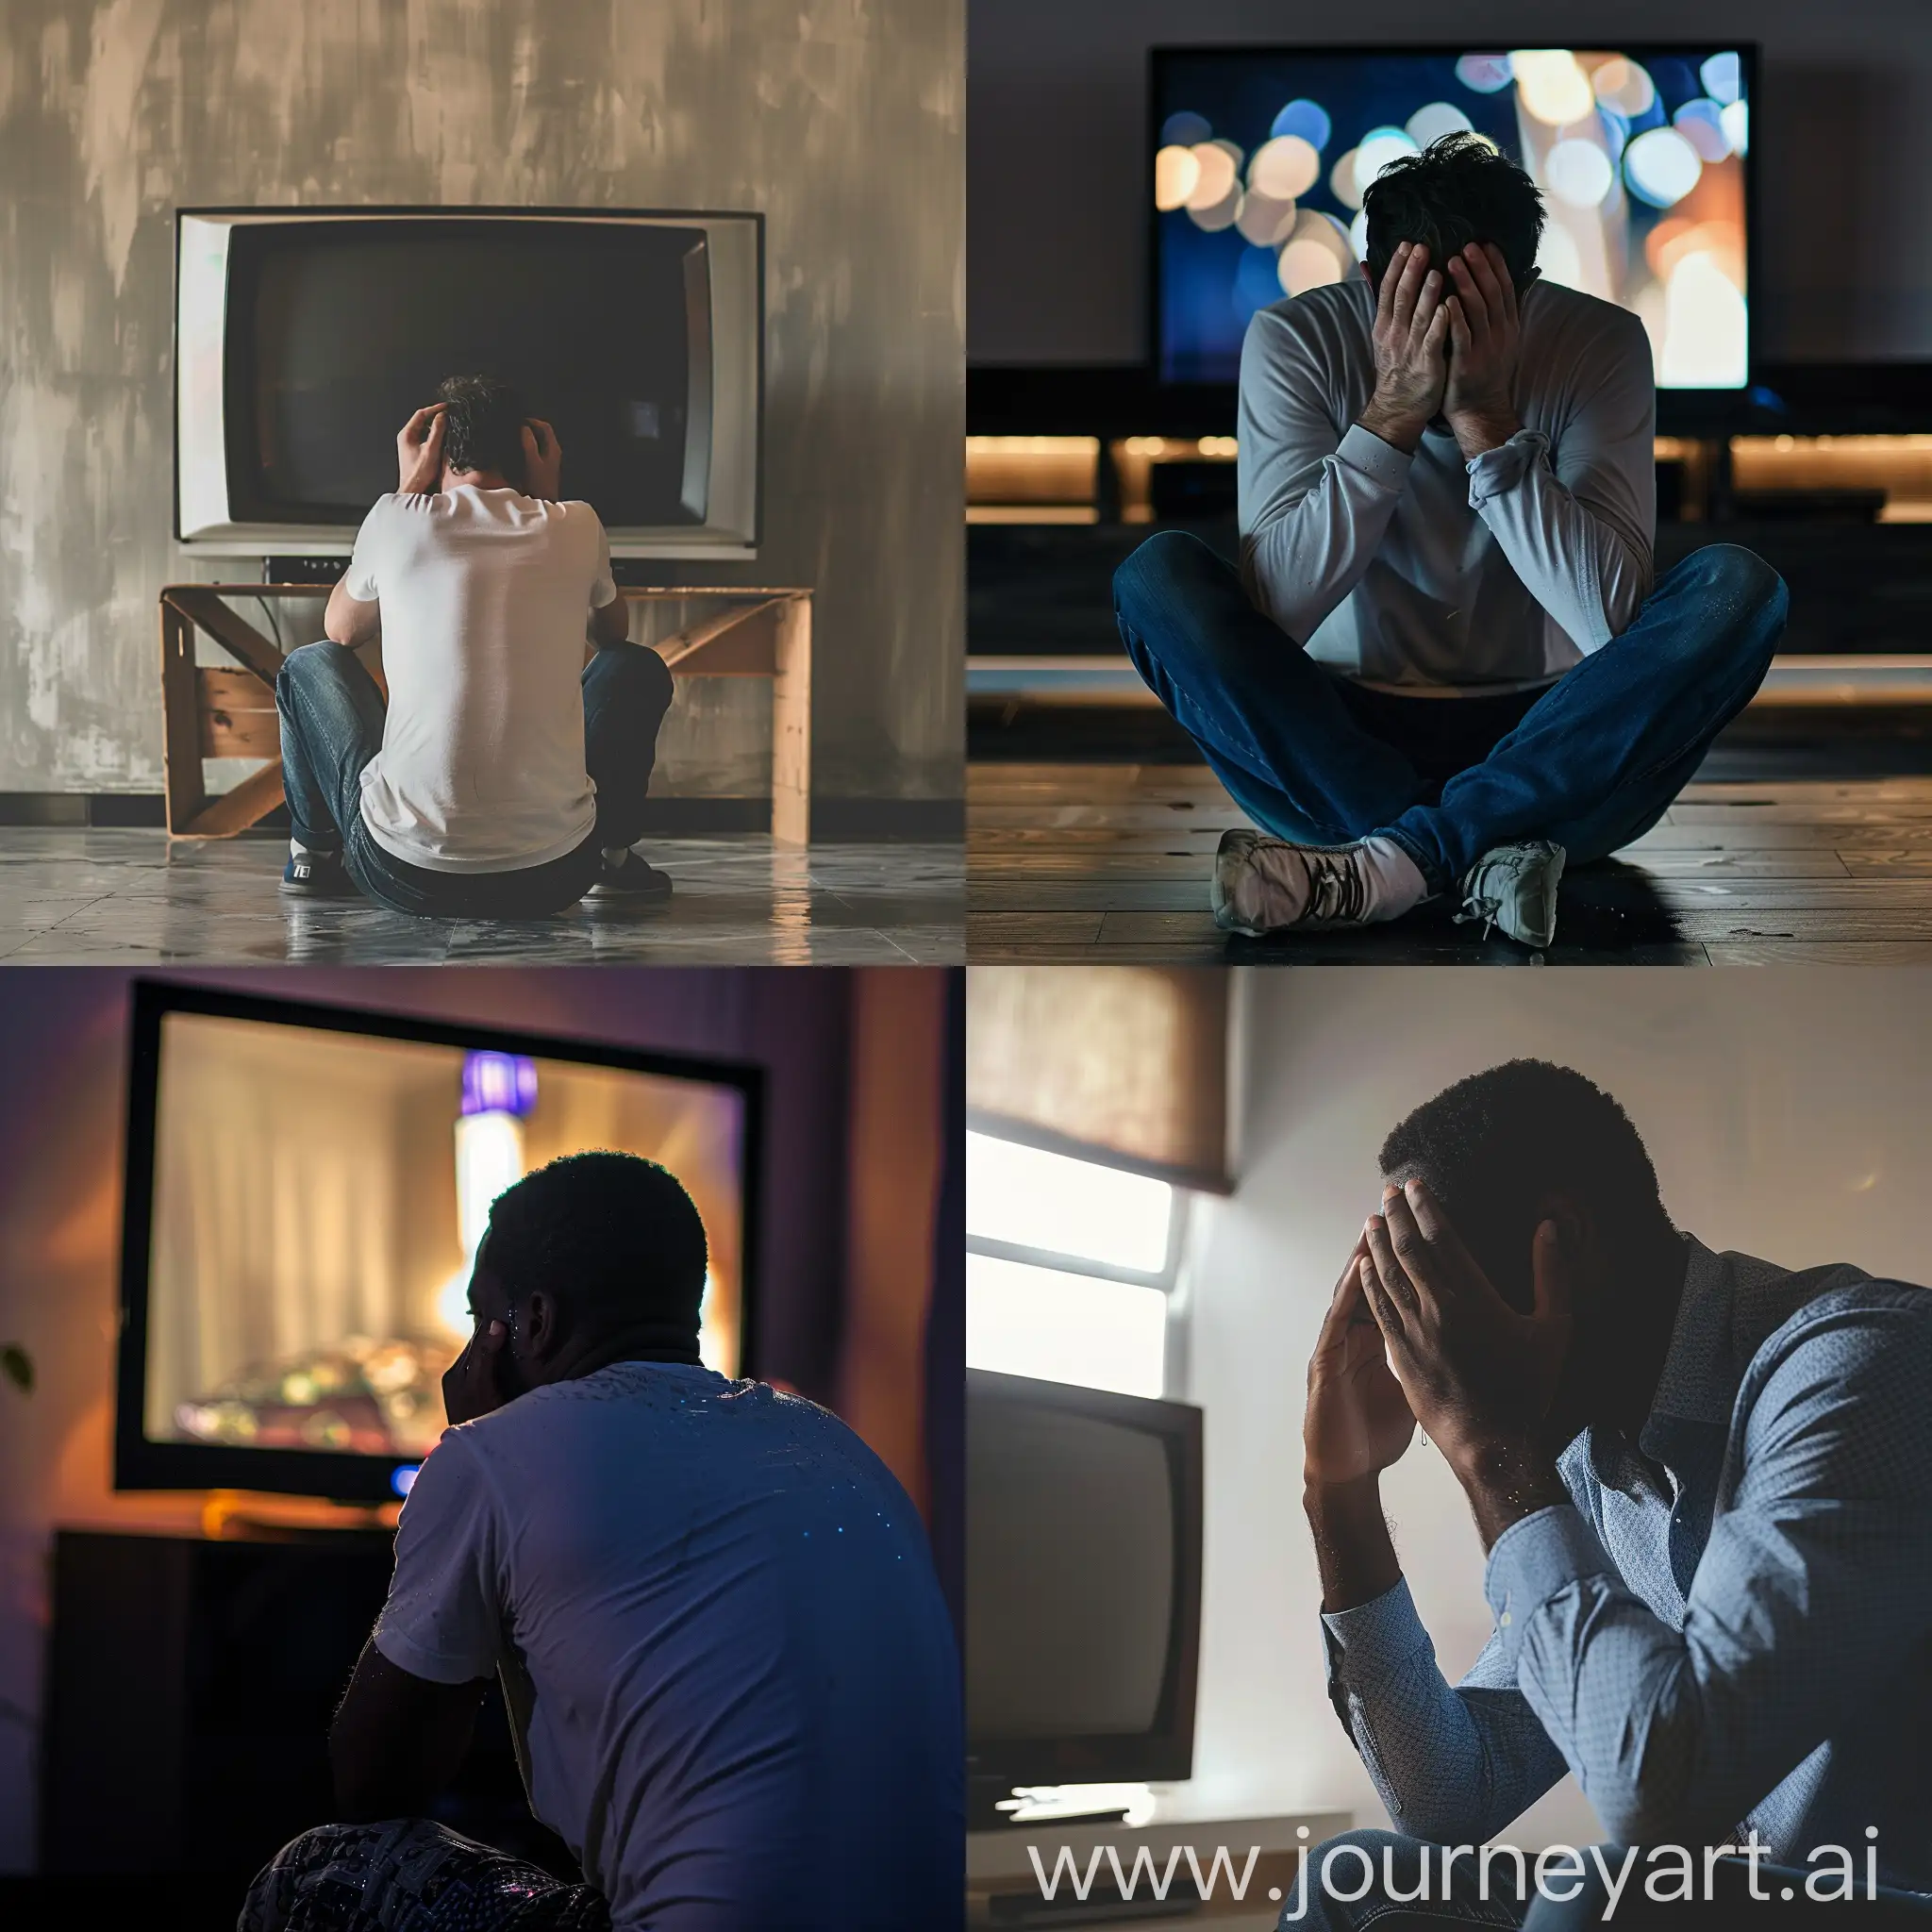 جلوس رجل امام تلفاز وهو يبكي